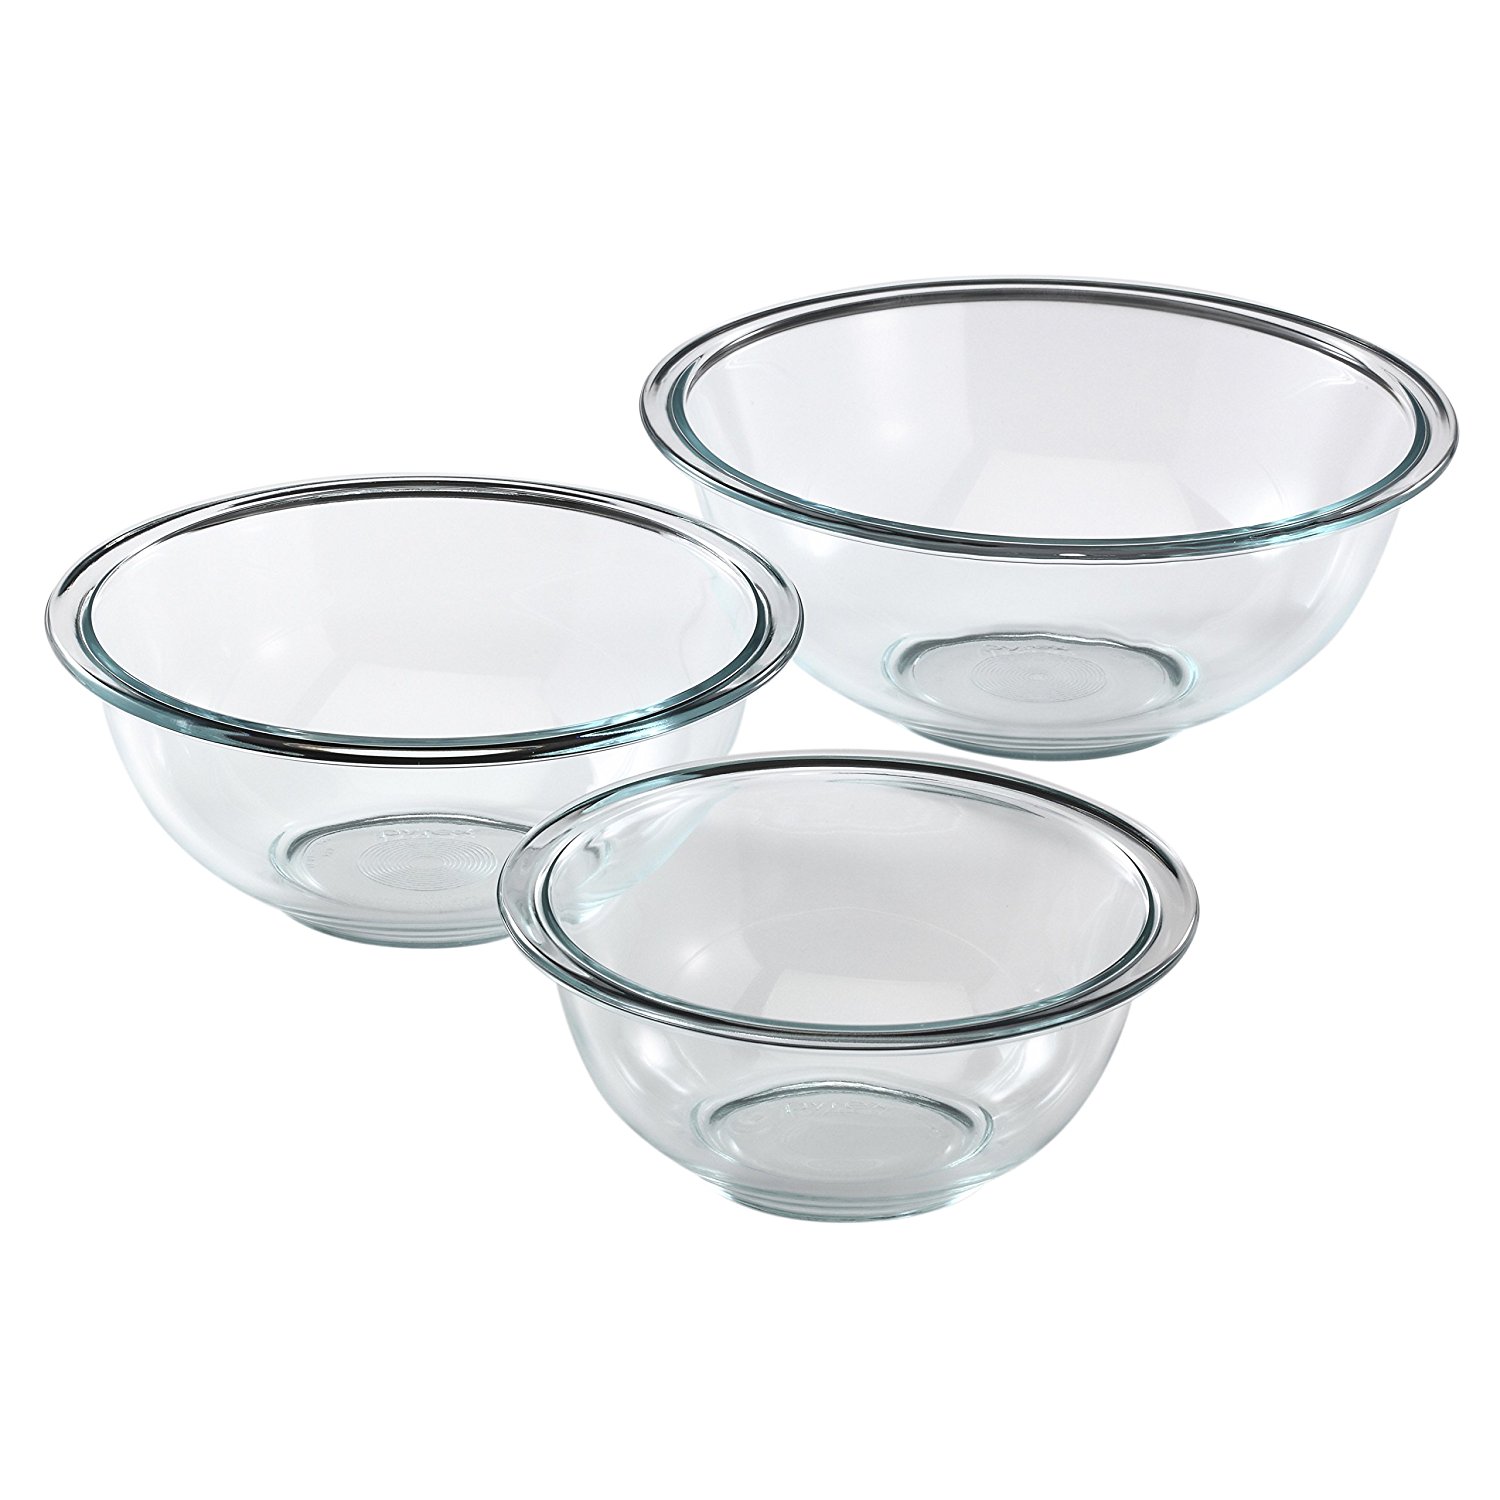 Pyrex Prepware 3-Piece Glass Mixing Bowl Set – Just $11.31!